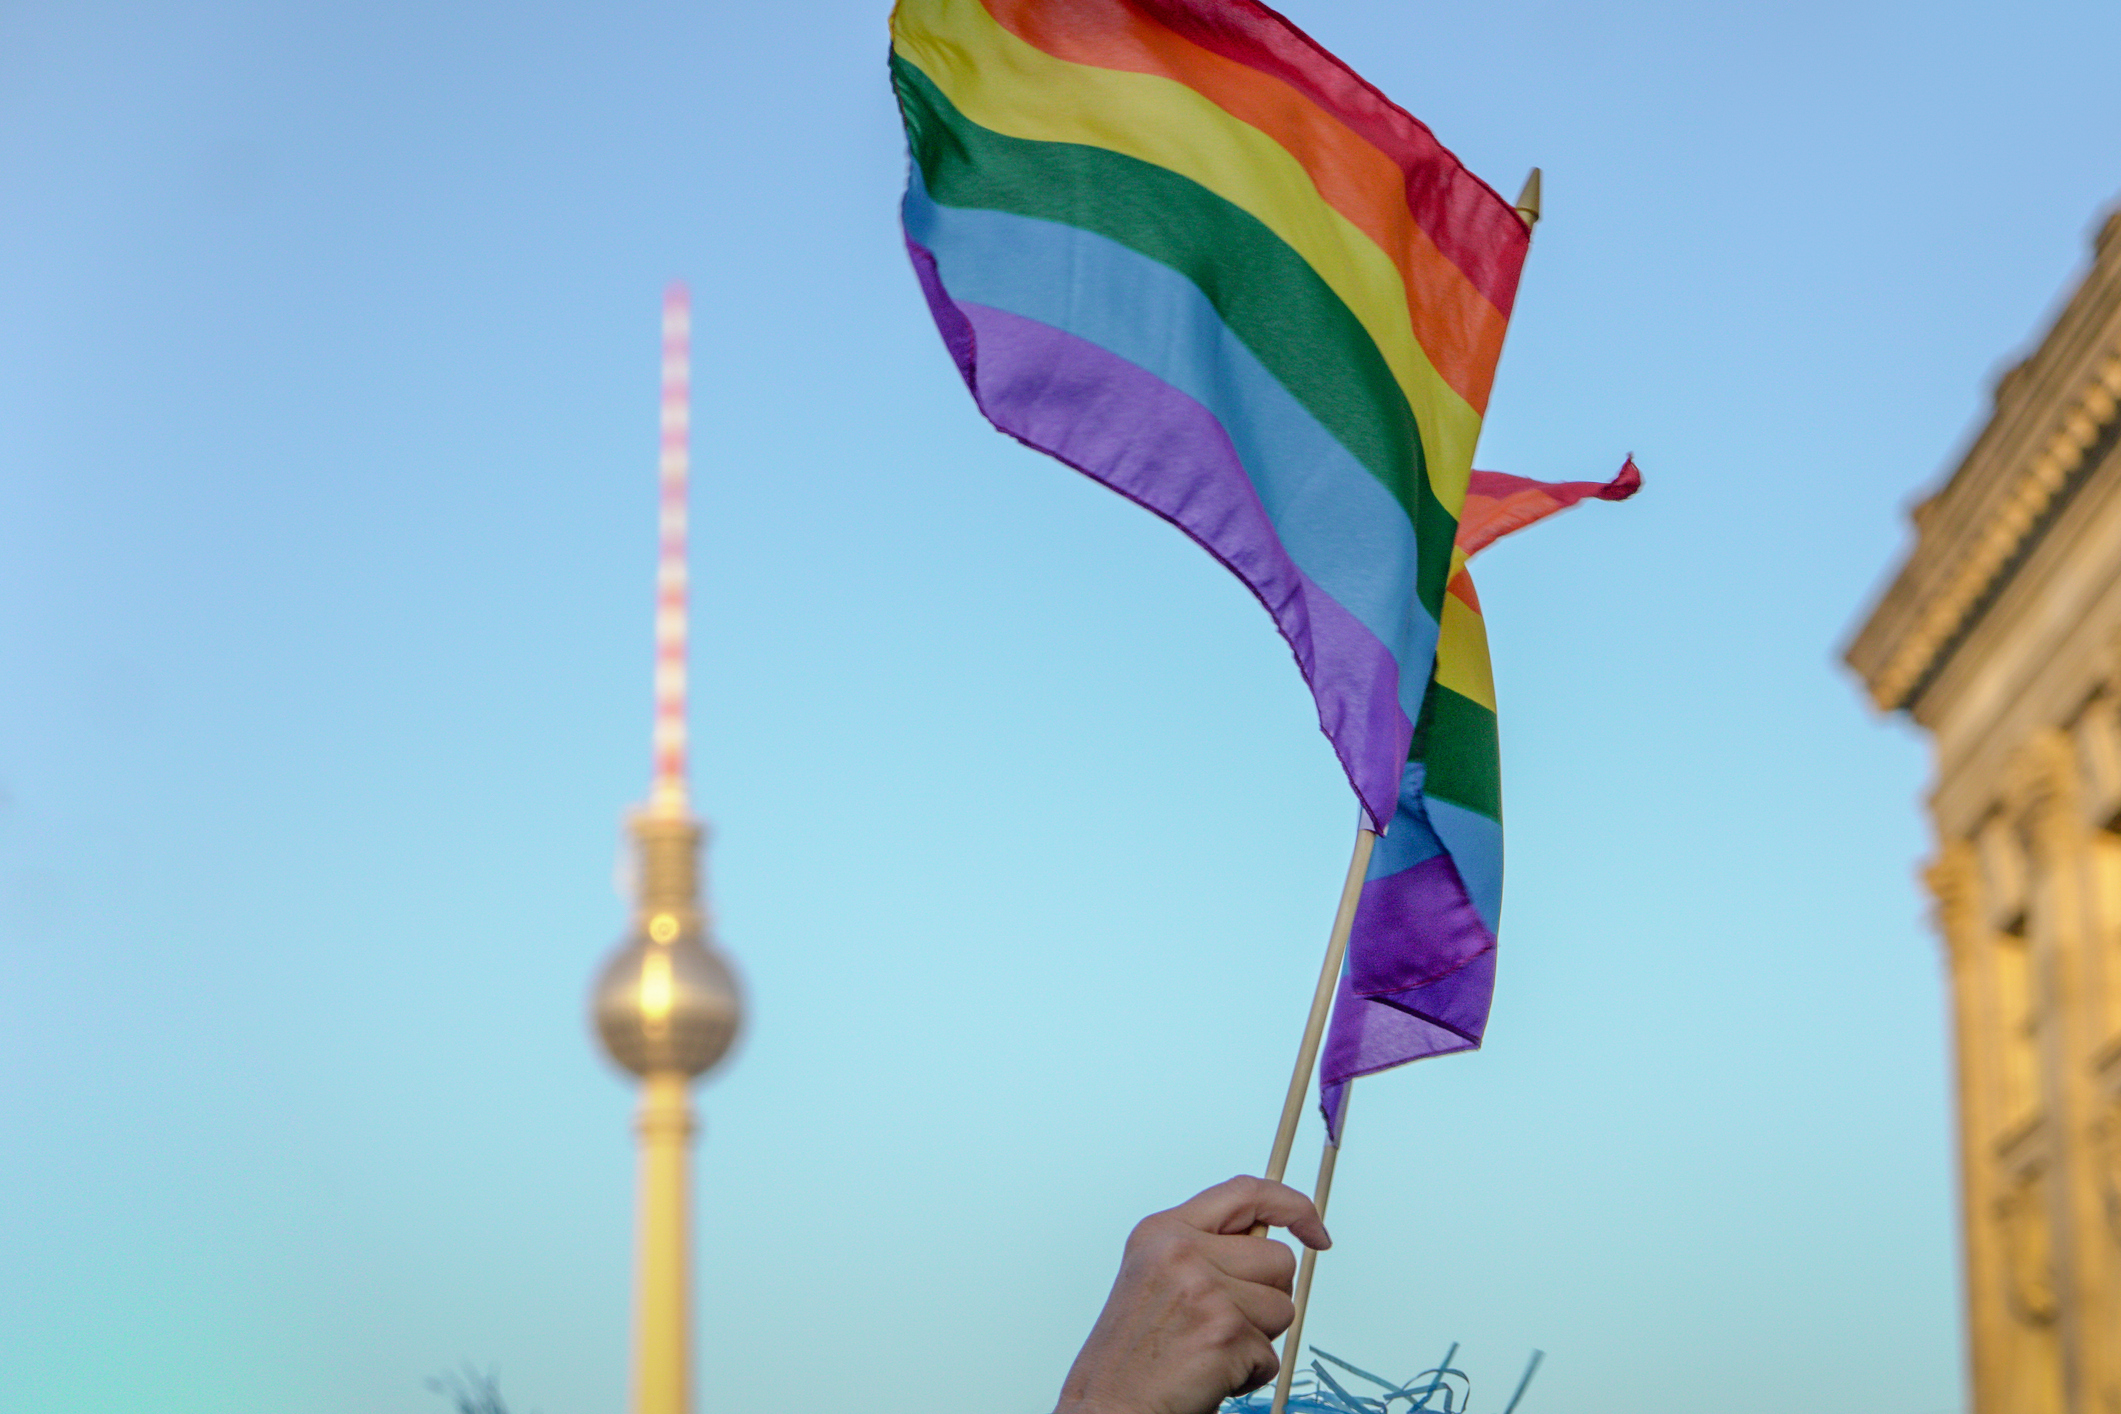 România, atenționată de Consiliul Europei că nu recunoaște legal relațiile între persoanele de același sex